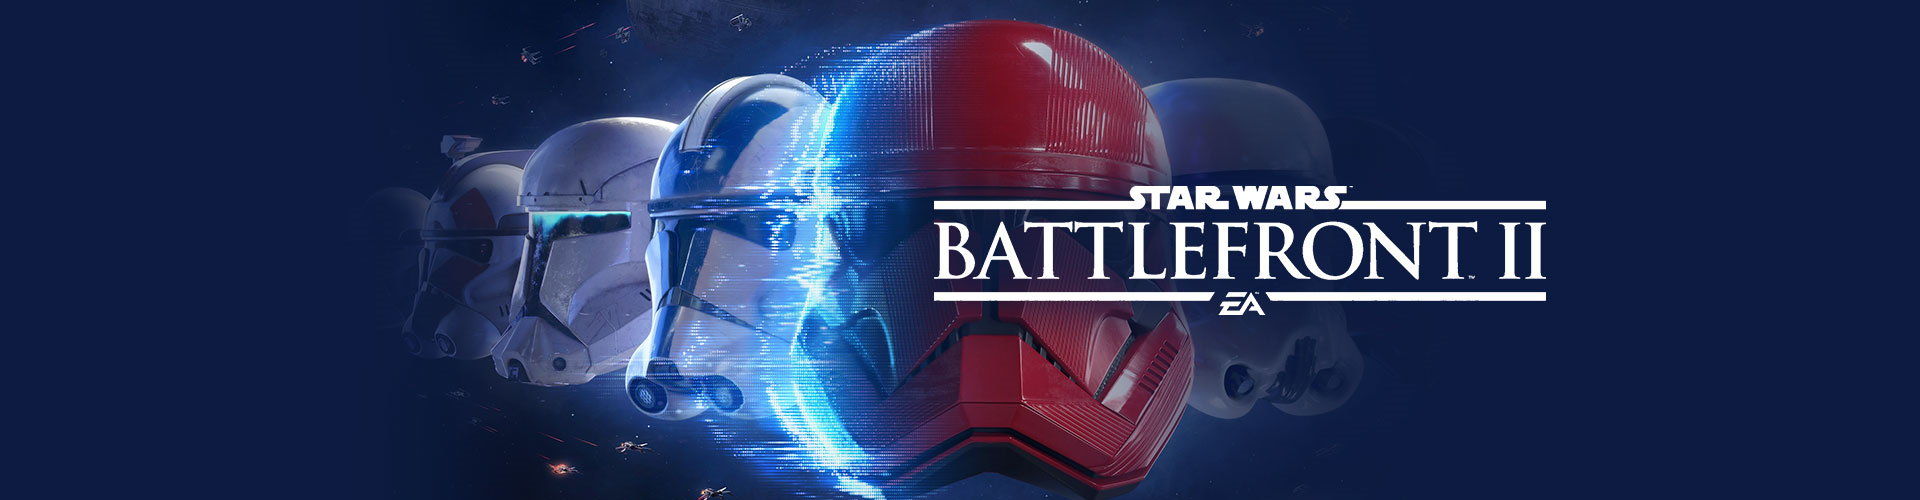 Configuration PC minimale, recommandée et 4K pour jouer à Star Wars Battlefront 2